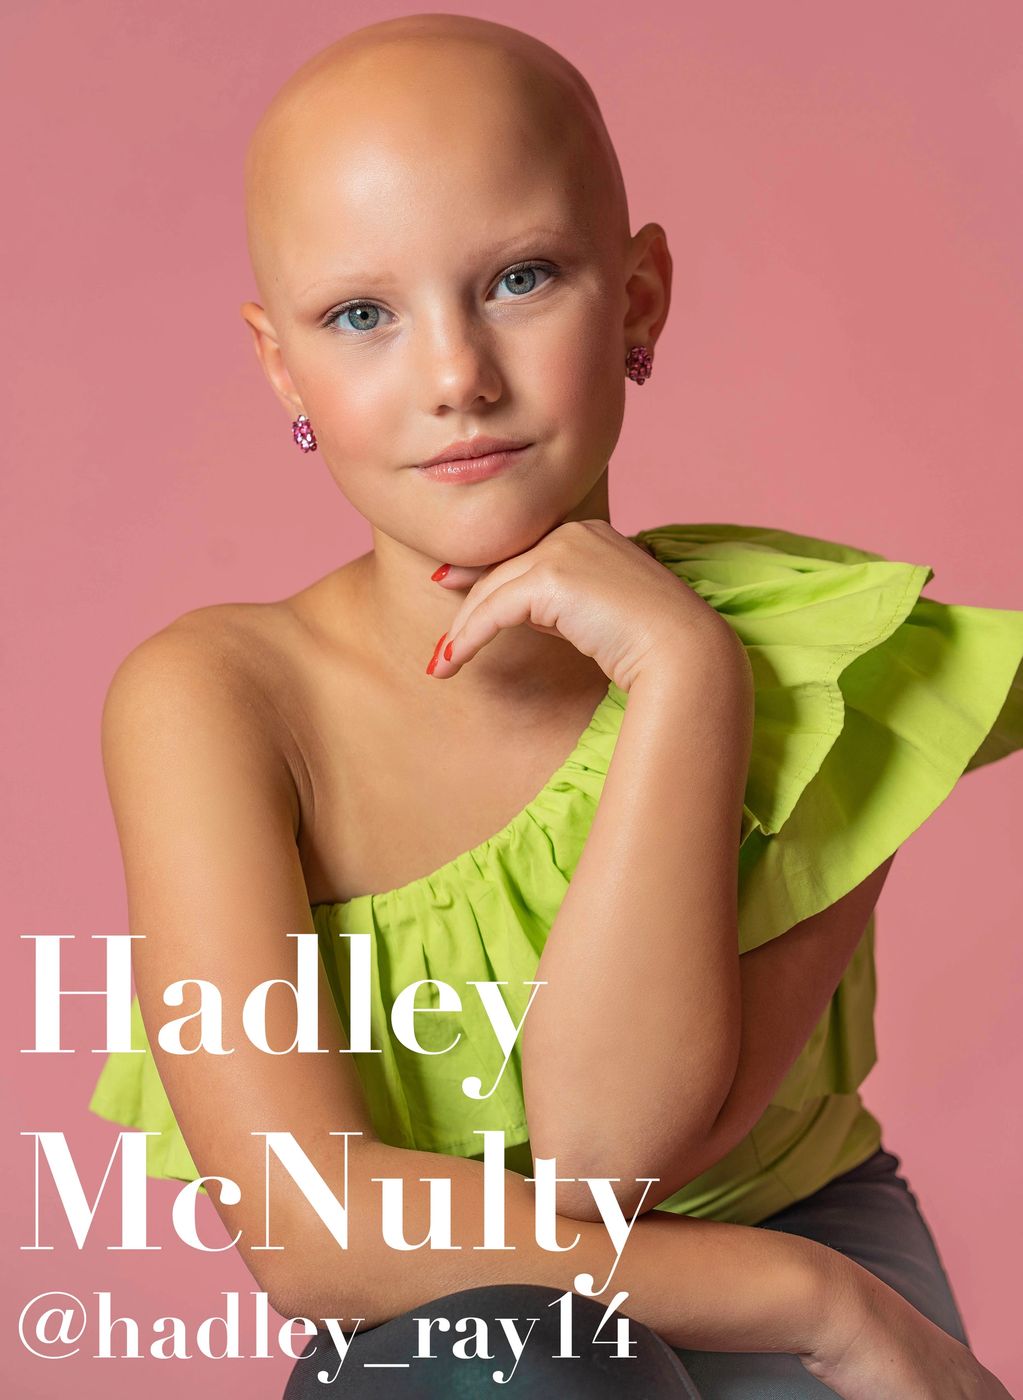 2024 Gold-Getter Hadley McNulty, 9
@Sarah_niehueser